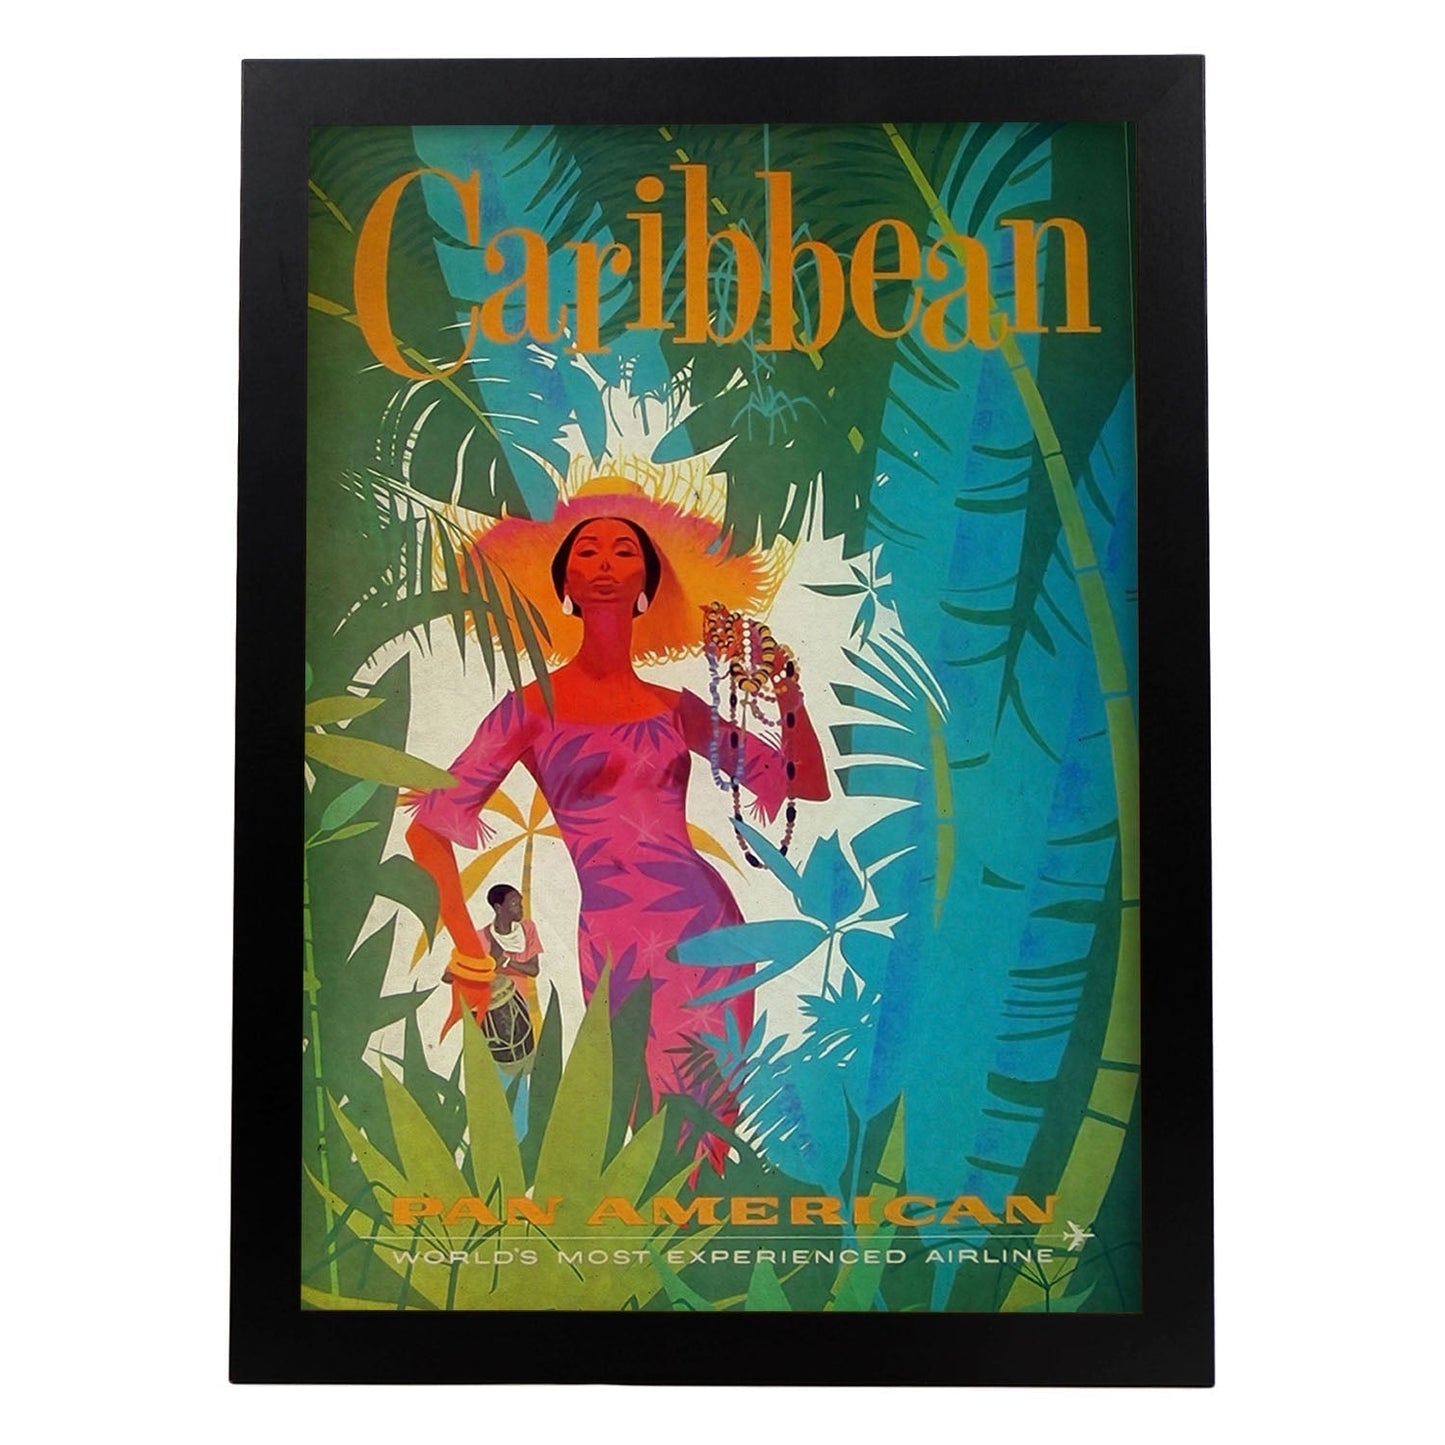 Poster vintage de Caribe. con imágenes vintage y de publicidad antigua.-Artwork-Nacnic-A3-Marco Negro-Nacnic Estudio SL